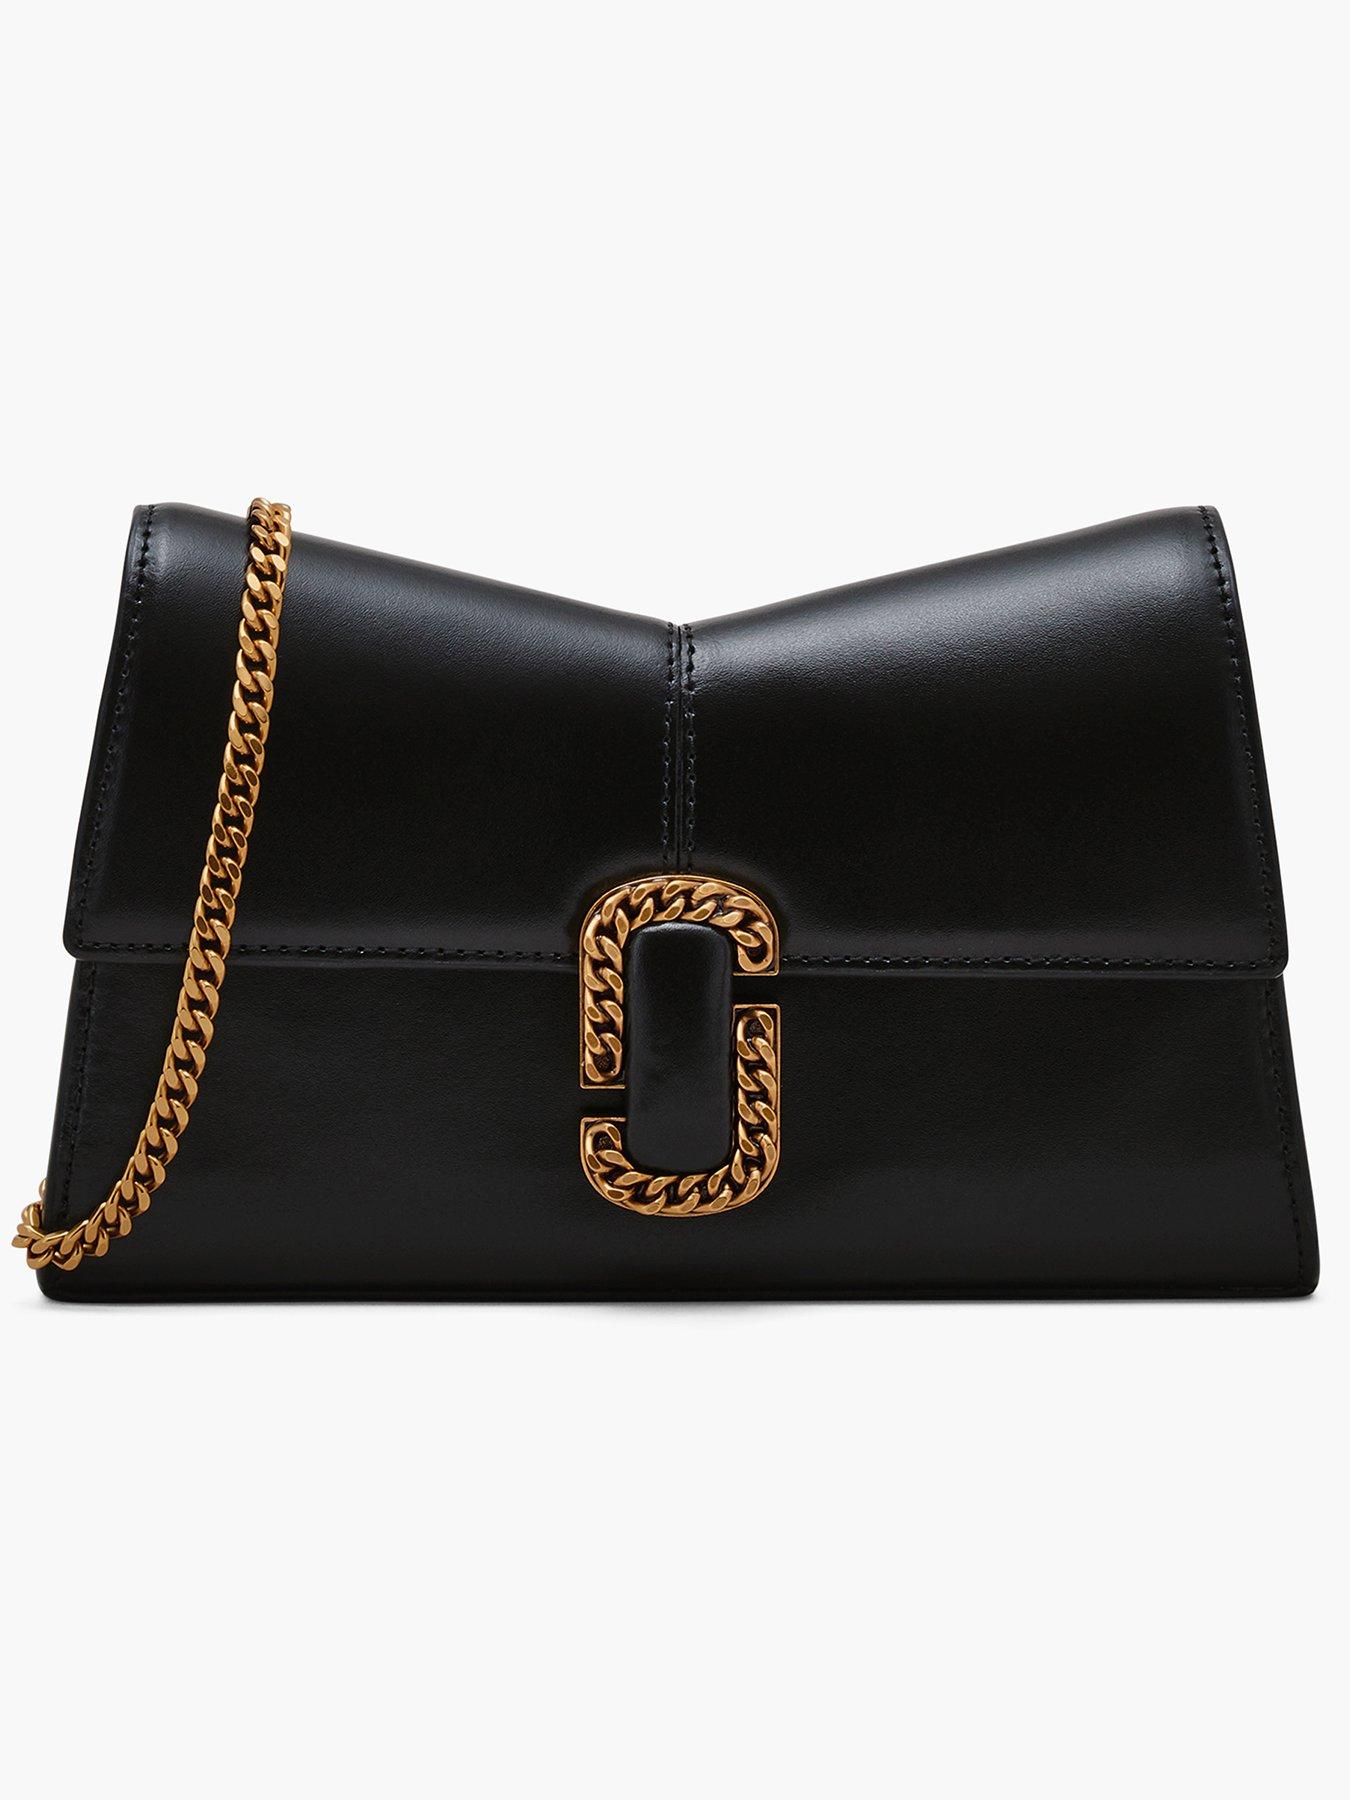 gold zipper pu leather black designer| Alibaba.com